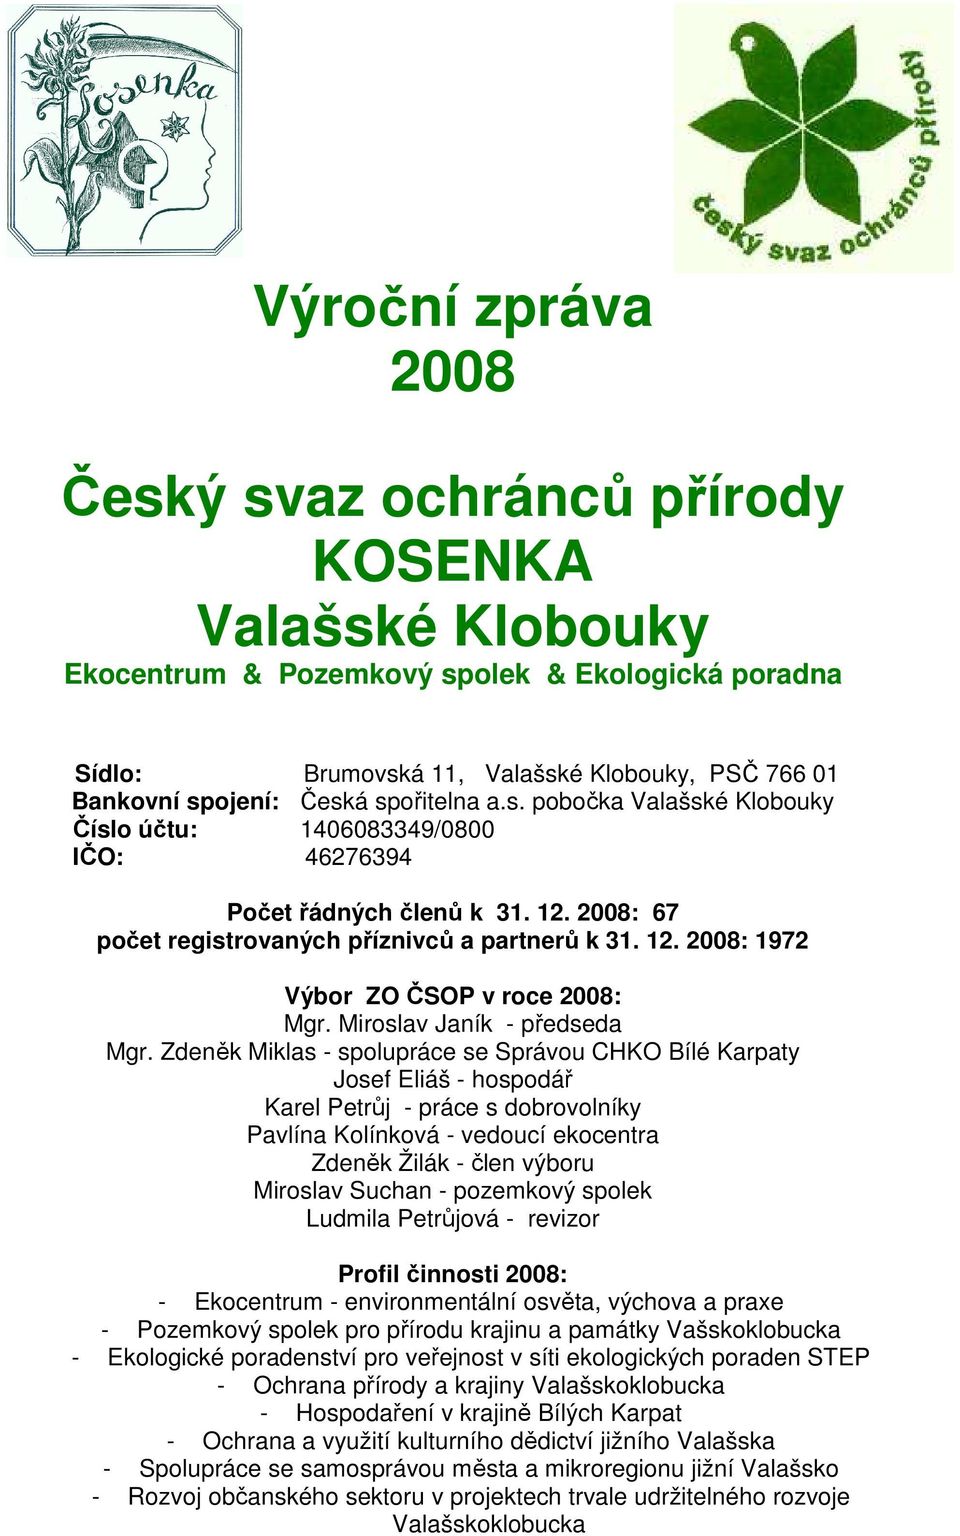 Výroční zpráva Český svaz ochránců přírody KOSENKA Valašské Klobouky  Ekocentrum & Pozemkový spolek & Ekologická poradna - PDF Stažení zdarma